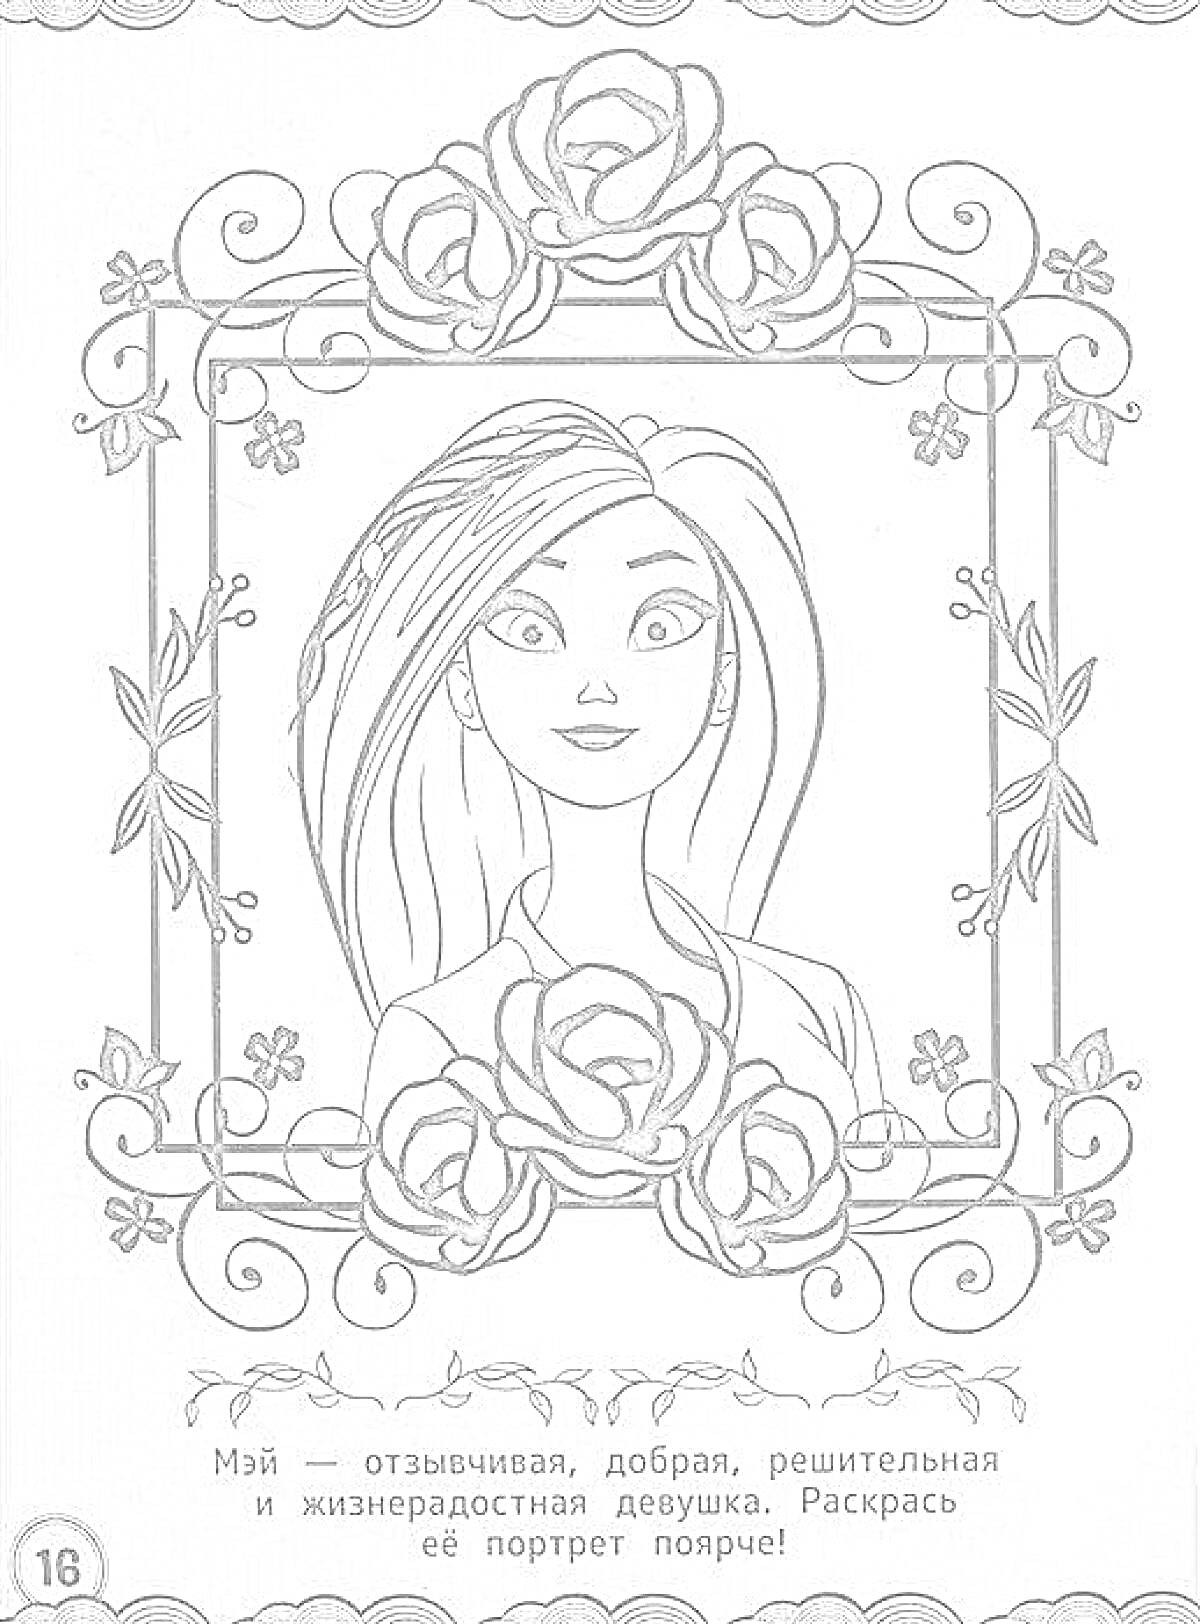 Портрет девушки по имени Май в рамке из роз